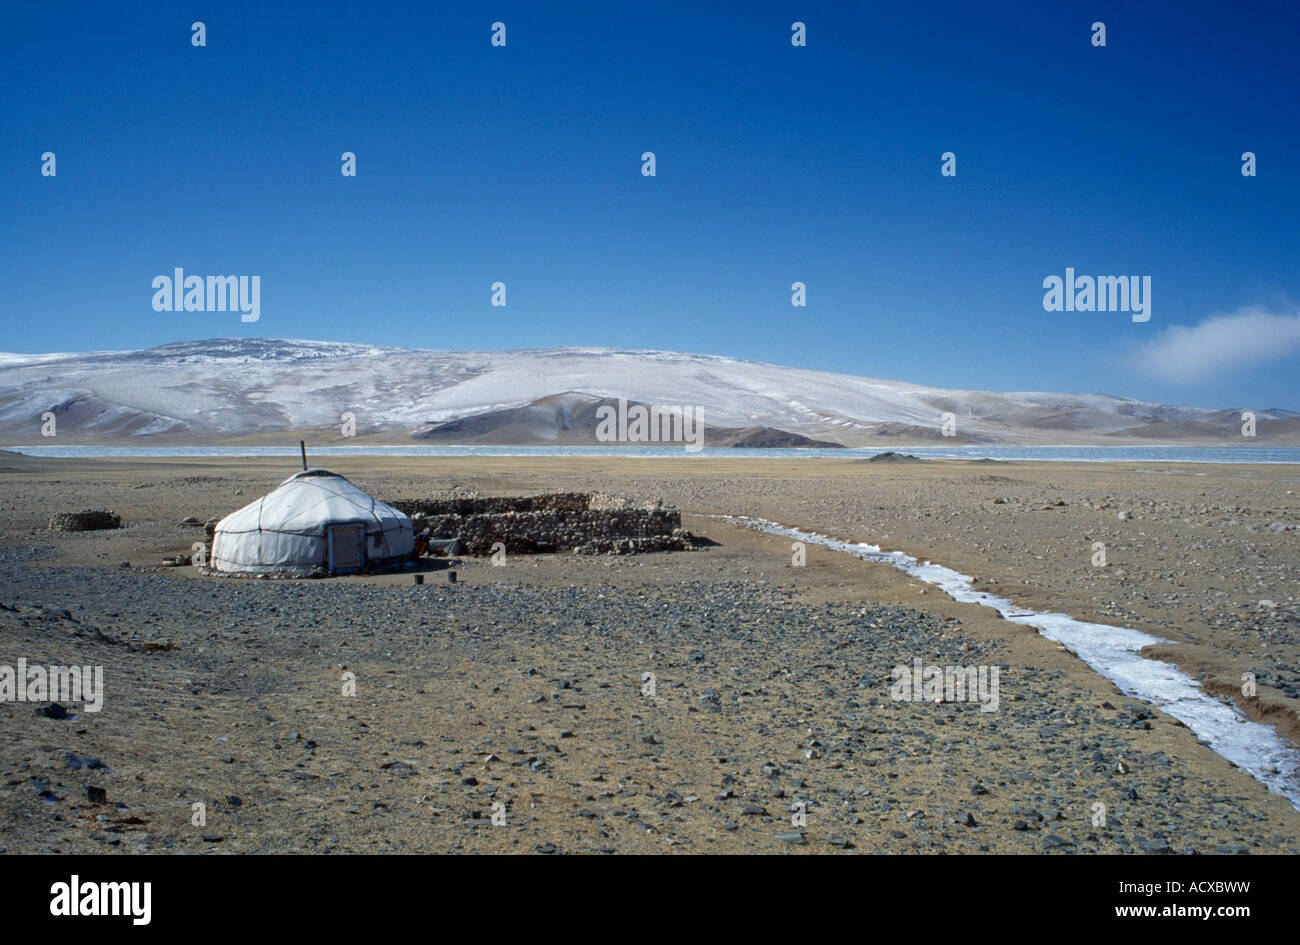 Asie Mongolie Bayan Olgii Province Vue sur camp nomade Kazakh sur plaines avec yourte unique et entièrement clôturé réservé Banque D'Images